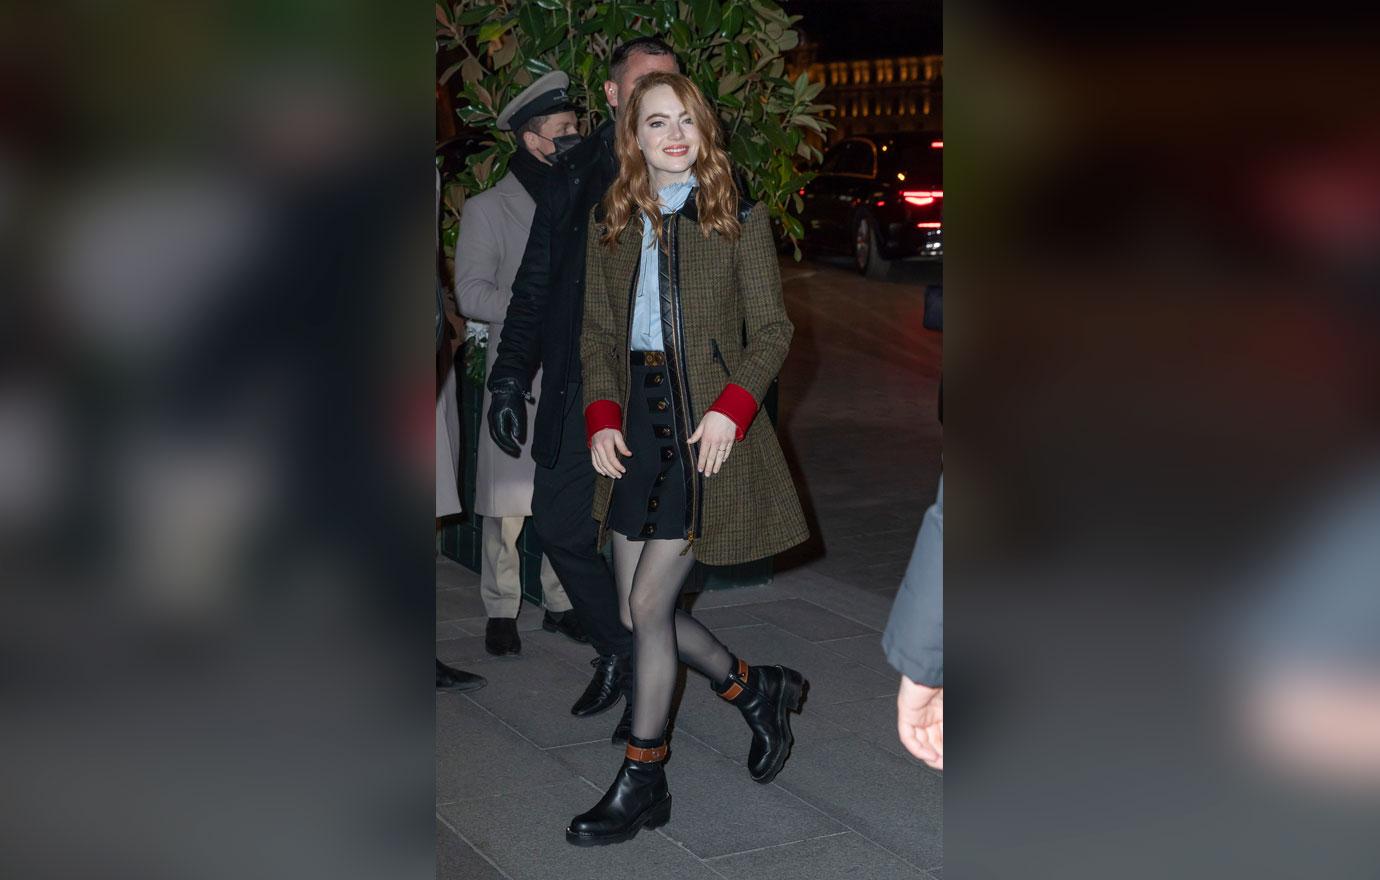 Emma Stone Looks Stylish During Paris Fashion Week: Photos